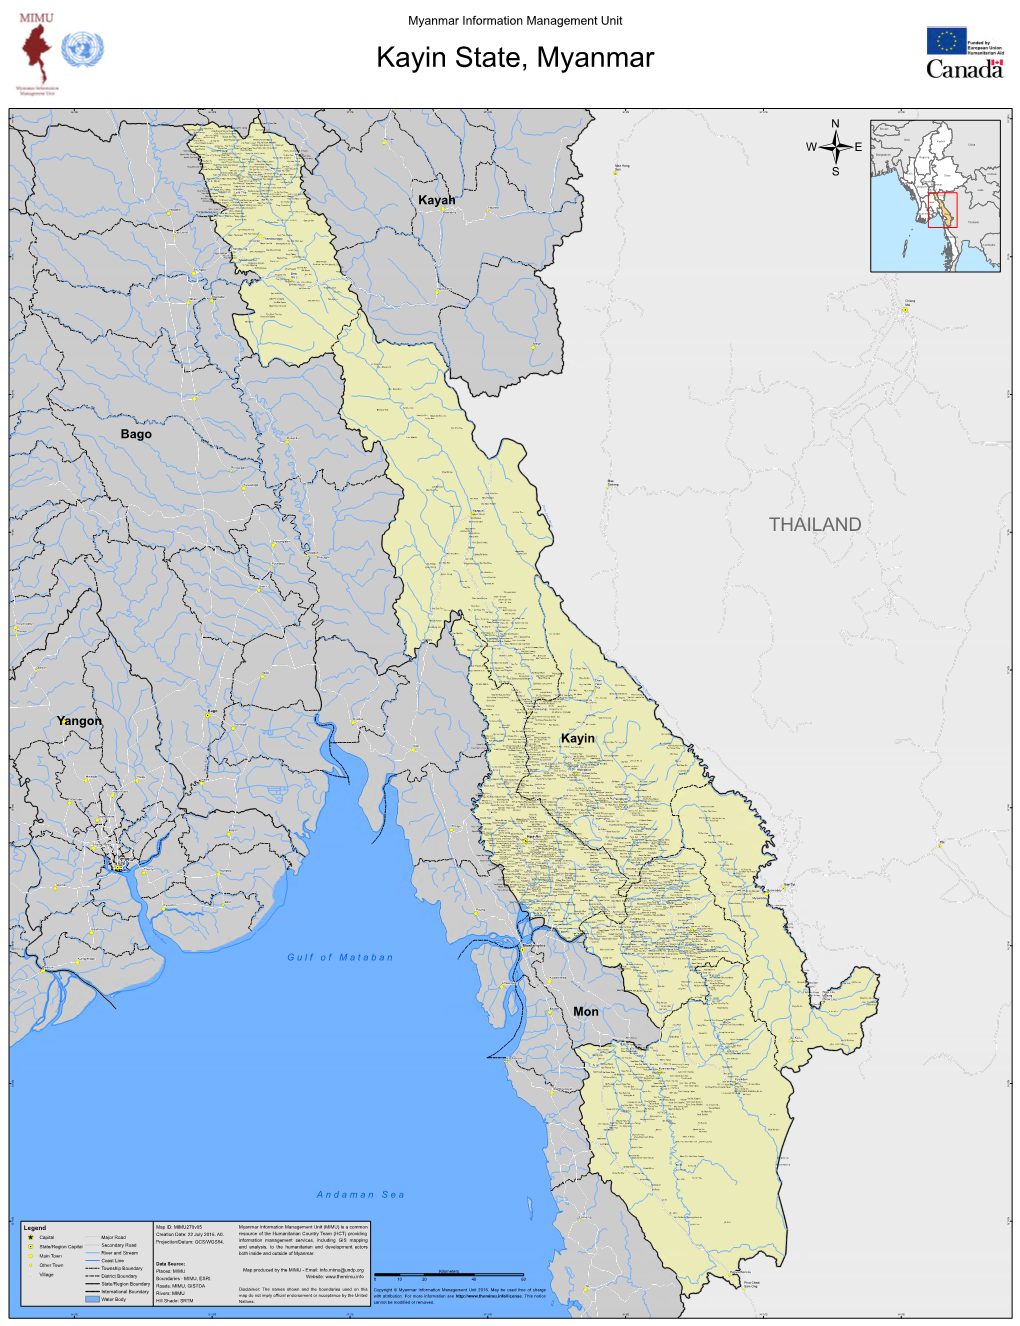 Thailand Hei Mo Mon Kywe Hpyu Taung